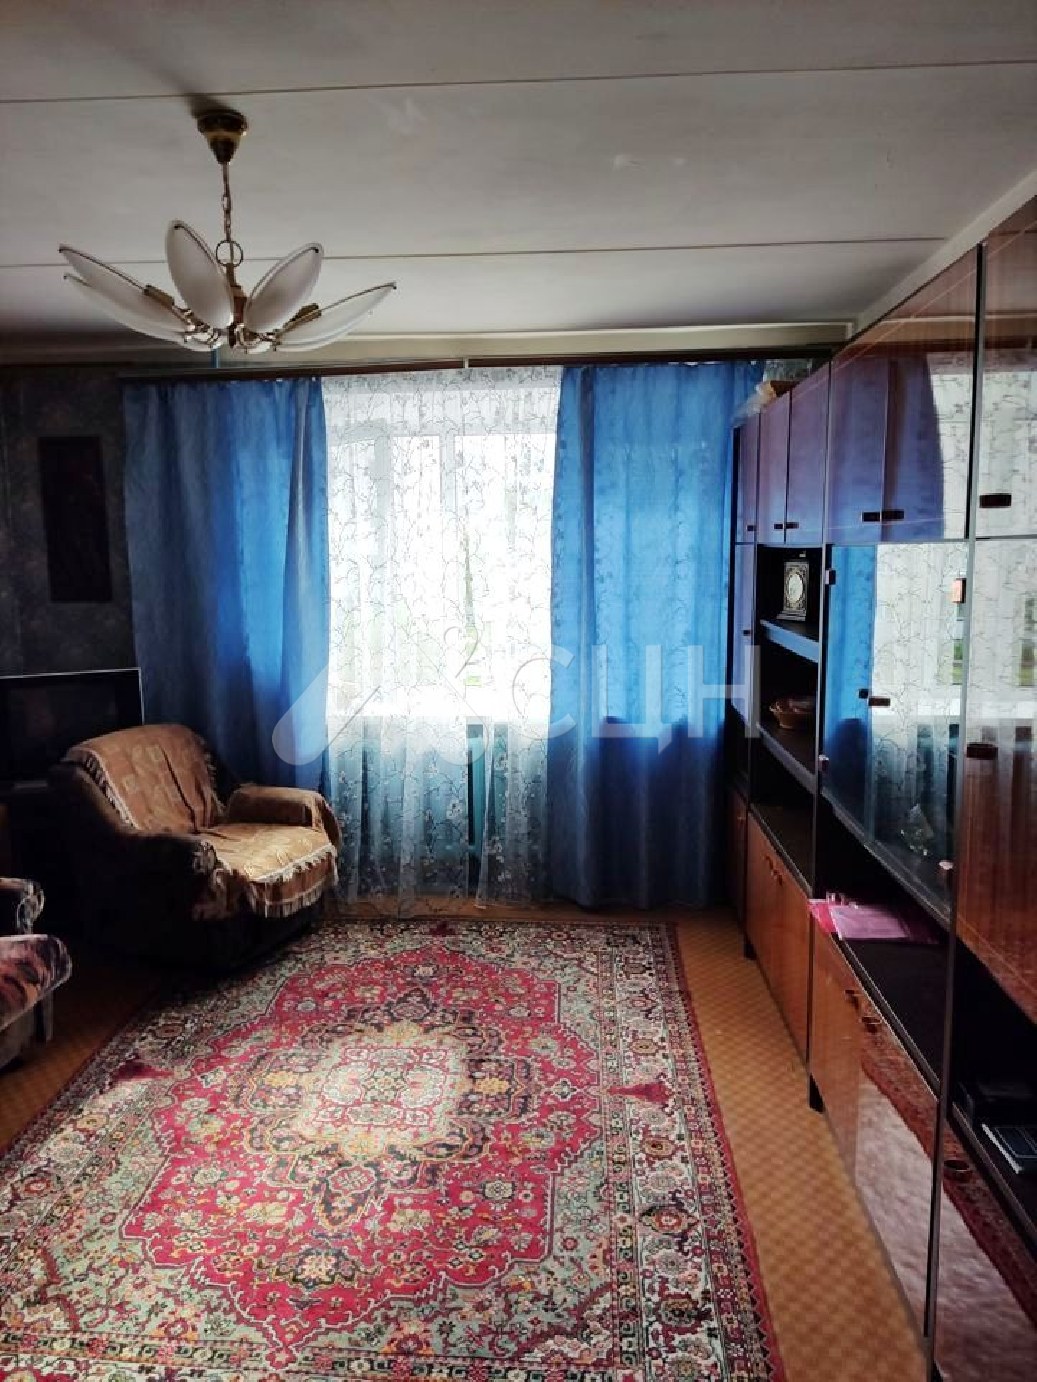 обЪявления саров квартиры
: Г. Саров, улица Некрасова, 11, 3-комн квартира, этаж 2 из 9, продажа.